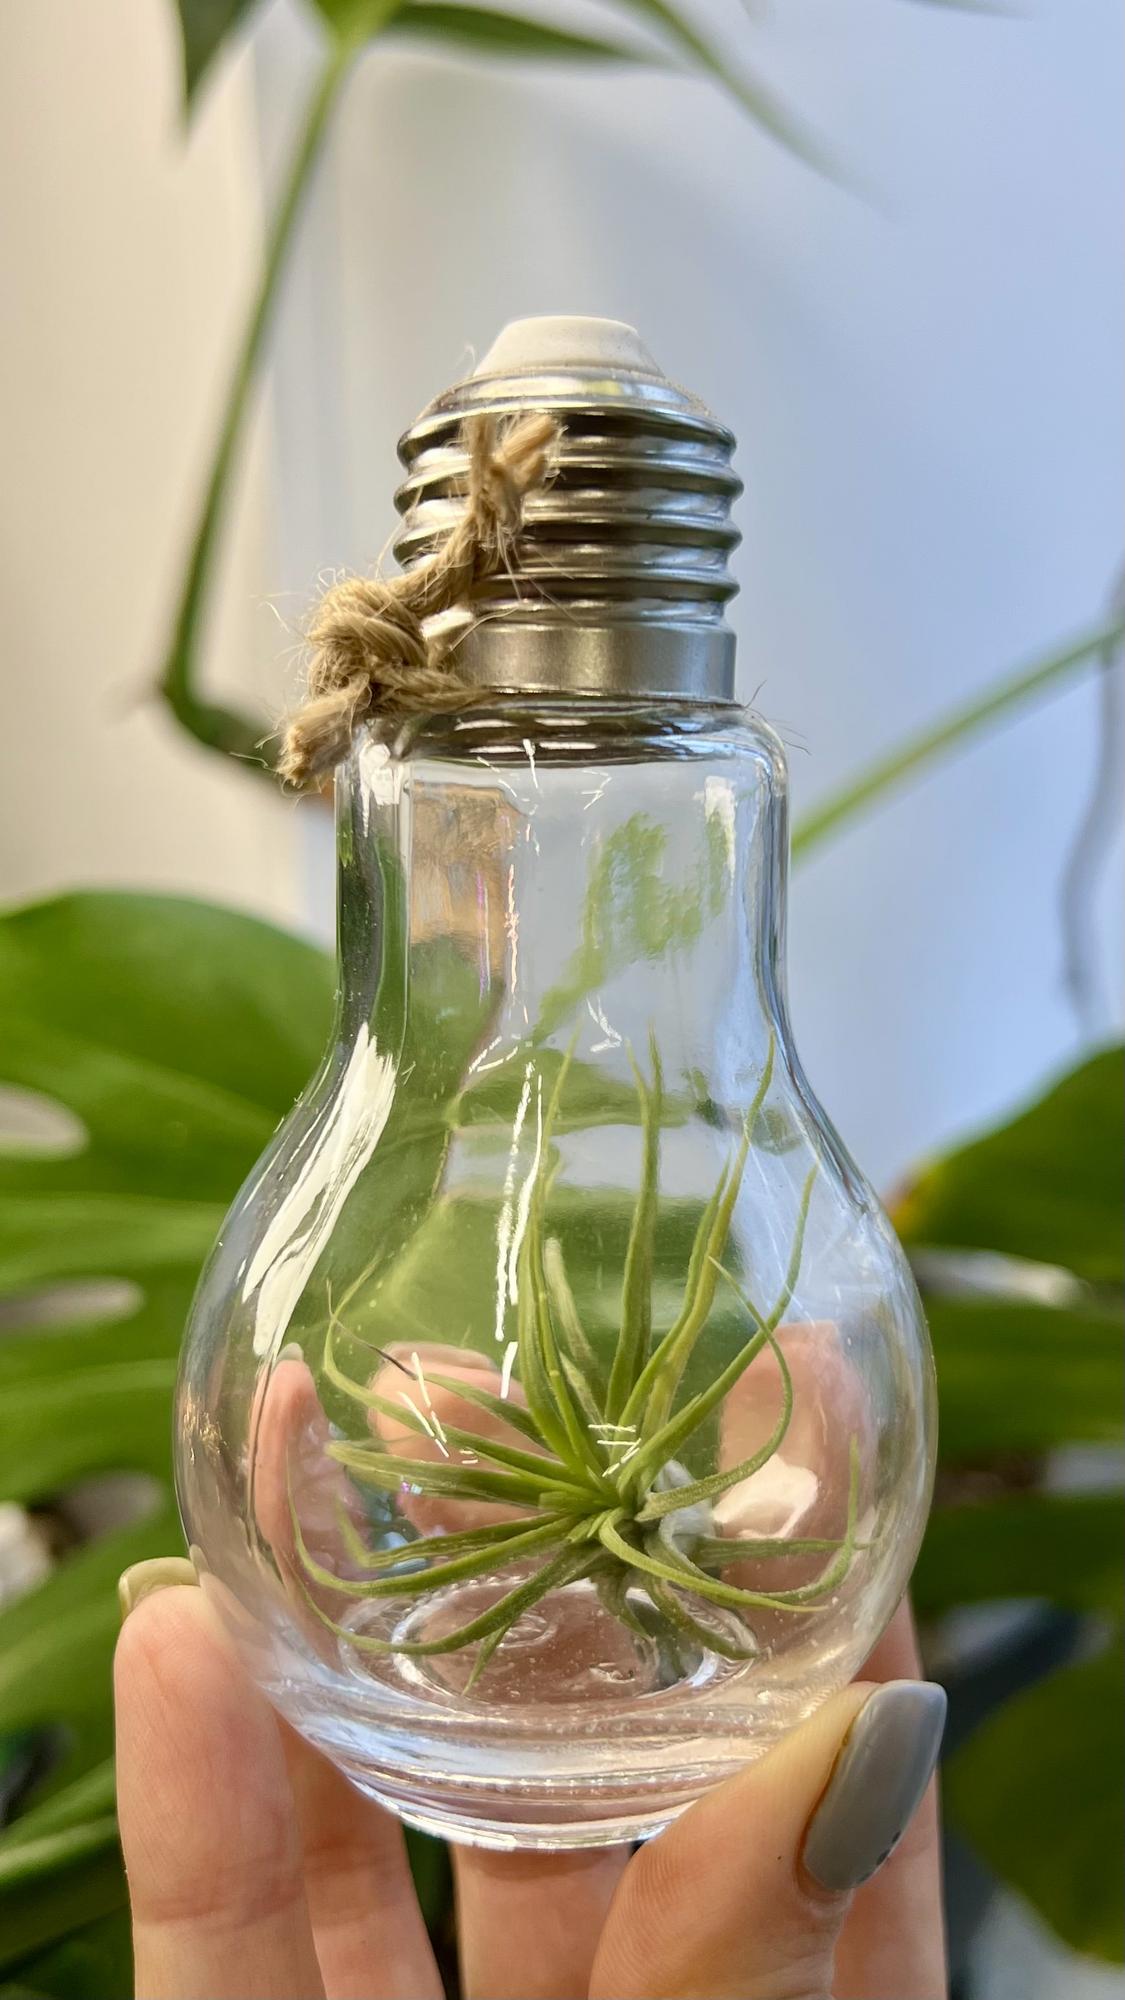 Как освещать комнатные растения? Интенсивность света и адаптация к потребностям растений